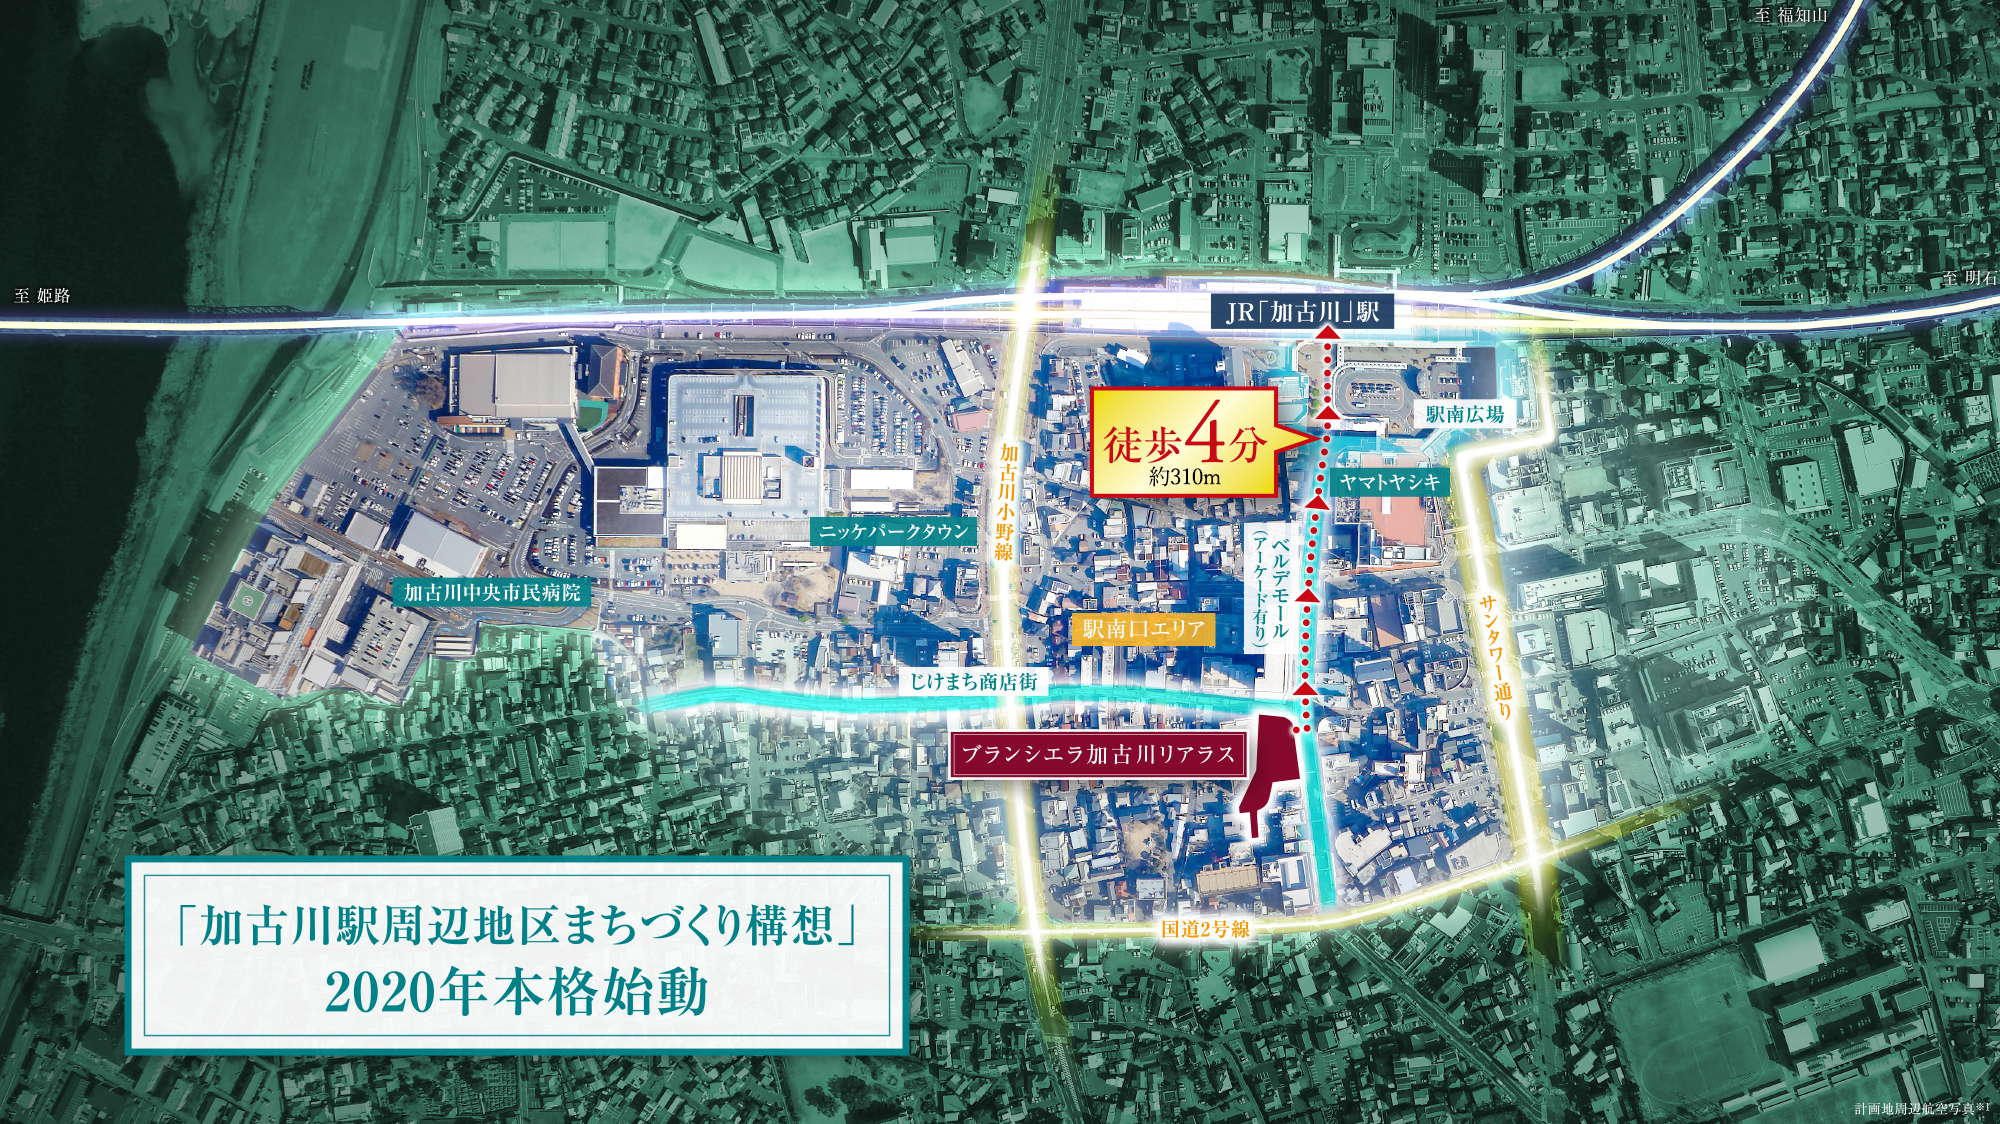 加古川駅周辺地区まちづくり構想2020年本格始動